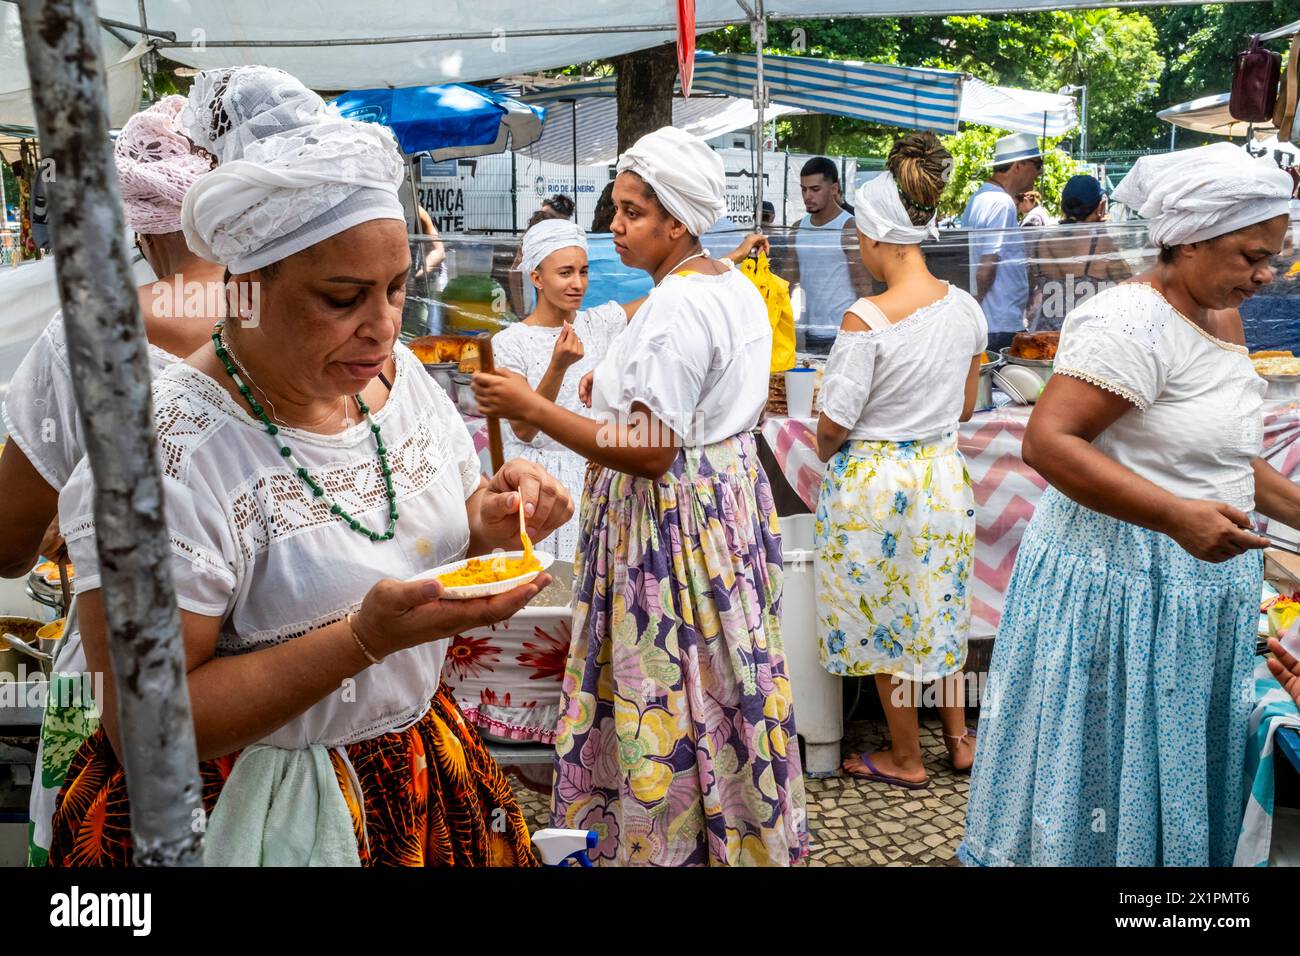 Femmes brésiliennes en costume traditionnel cuisiner et préparer la nourriture dans Un café au marché du dimanche d'Ipanema (foire hippie), Rio de Janeiro, Brésil. Banque D'Images